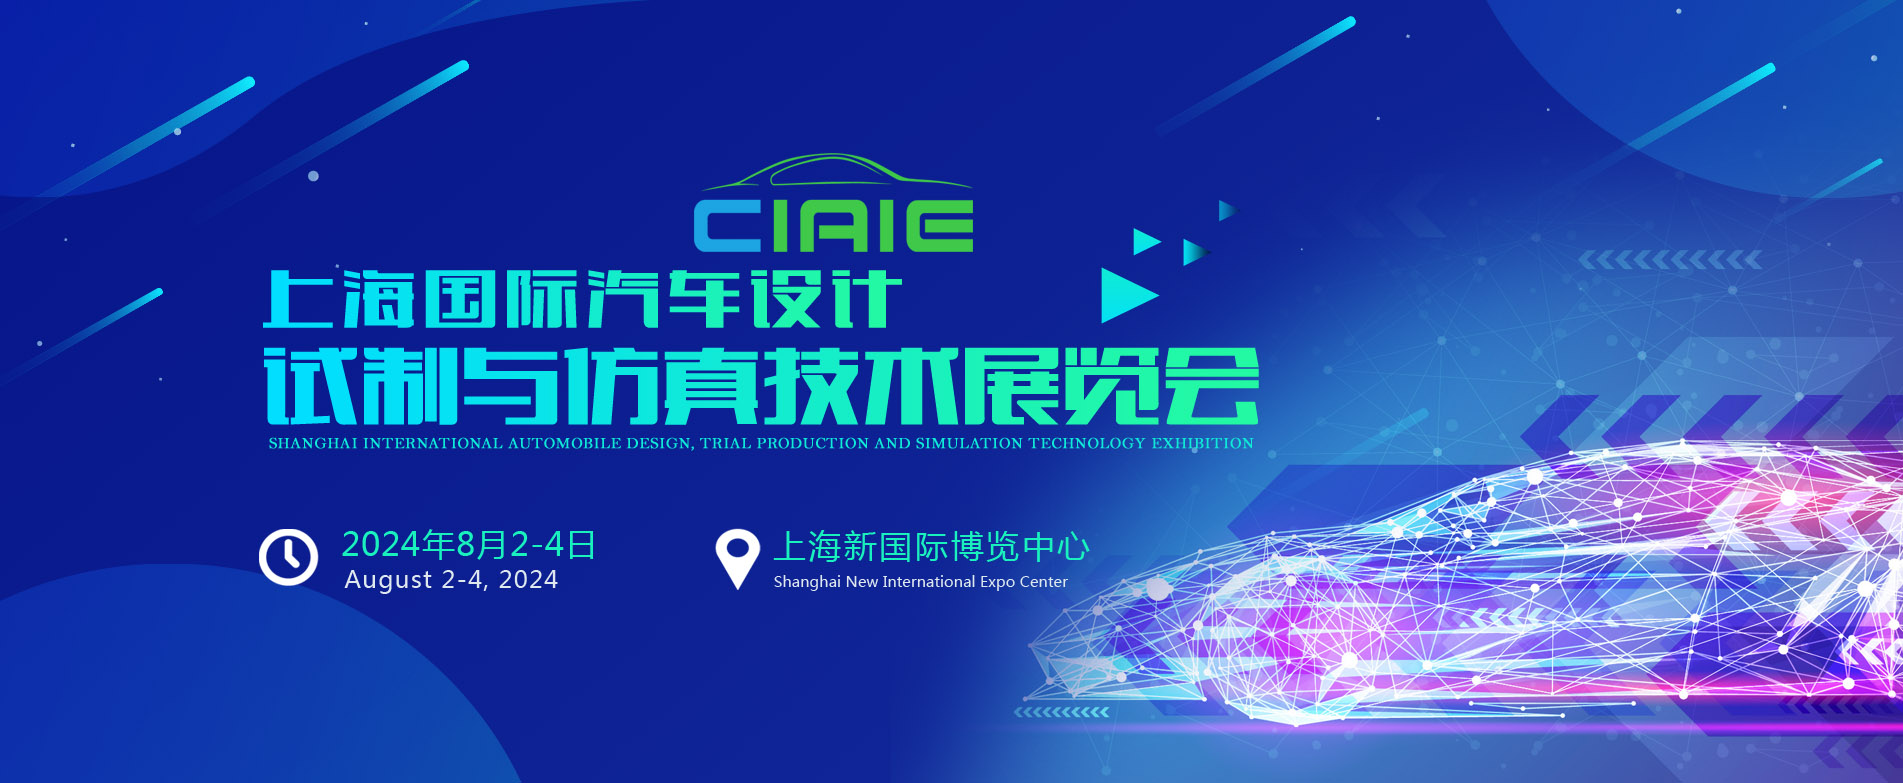 2024上海国际汽车设计/试制与仿真技术展览会